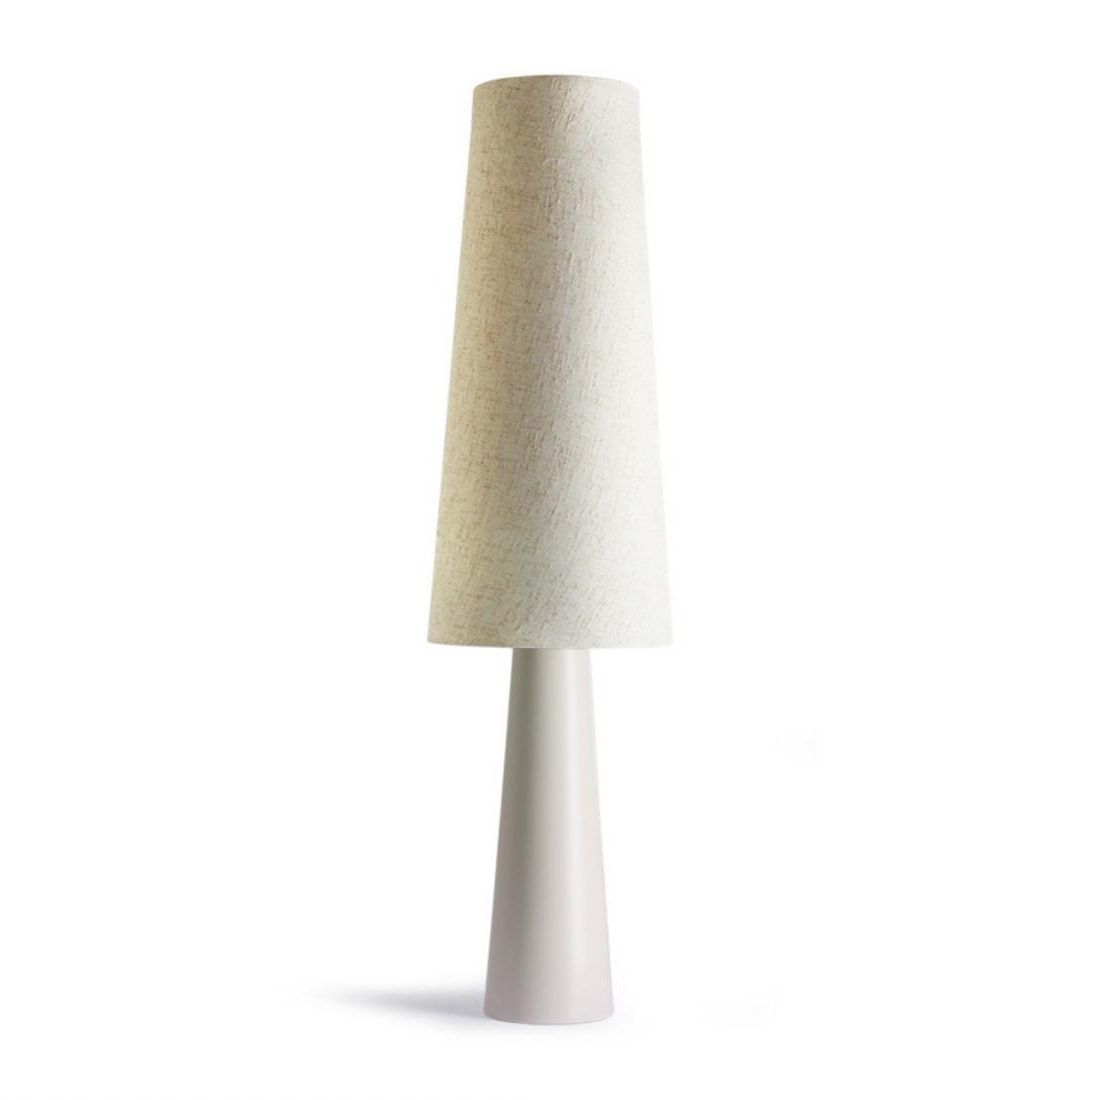 Floor Lamps | Hk Living Retro Cone Floor Lamp Xl – Cream – Hillock View In Cone Floor Lamps (View 16 of 20)